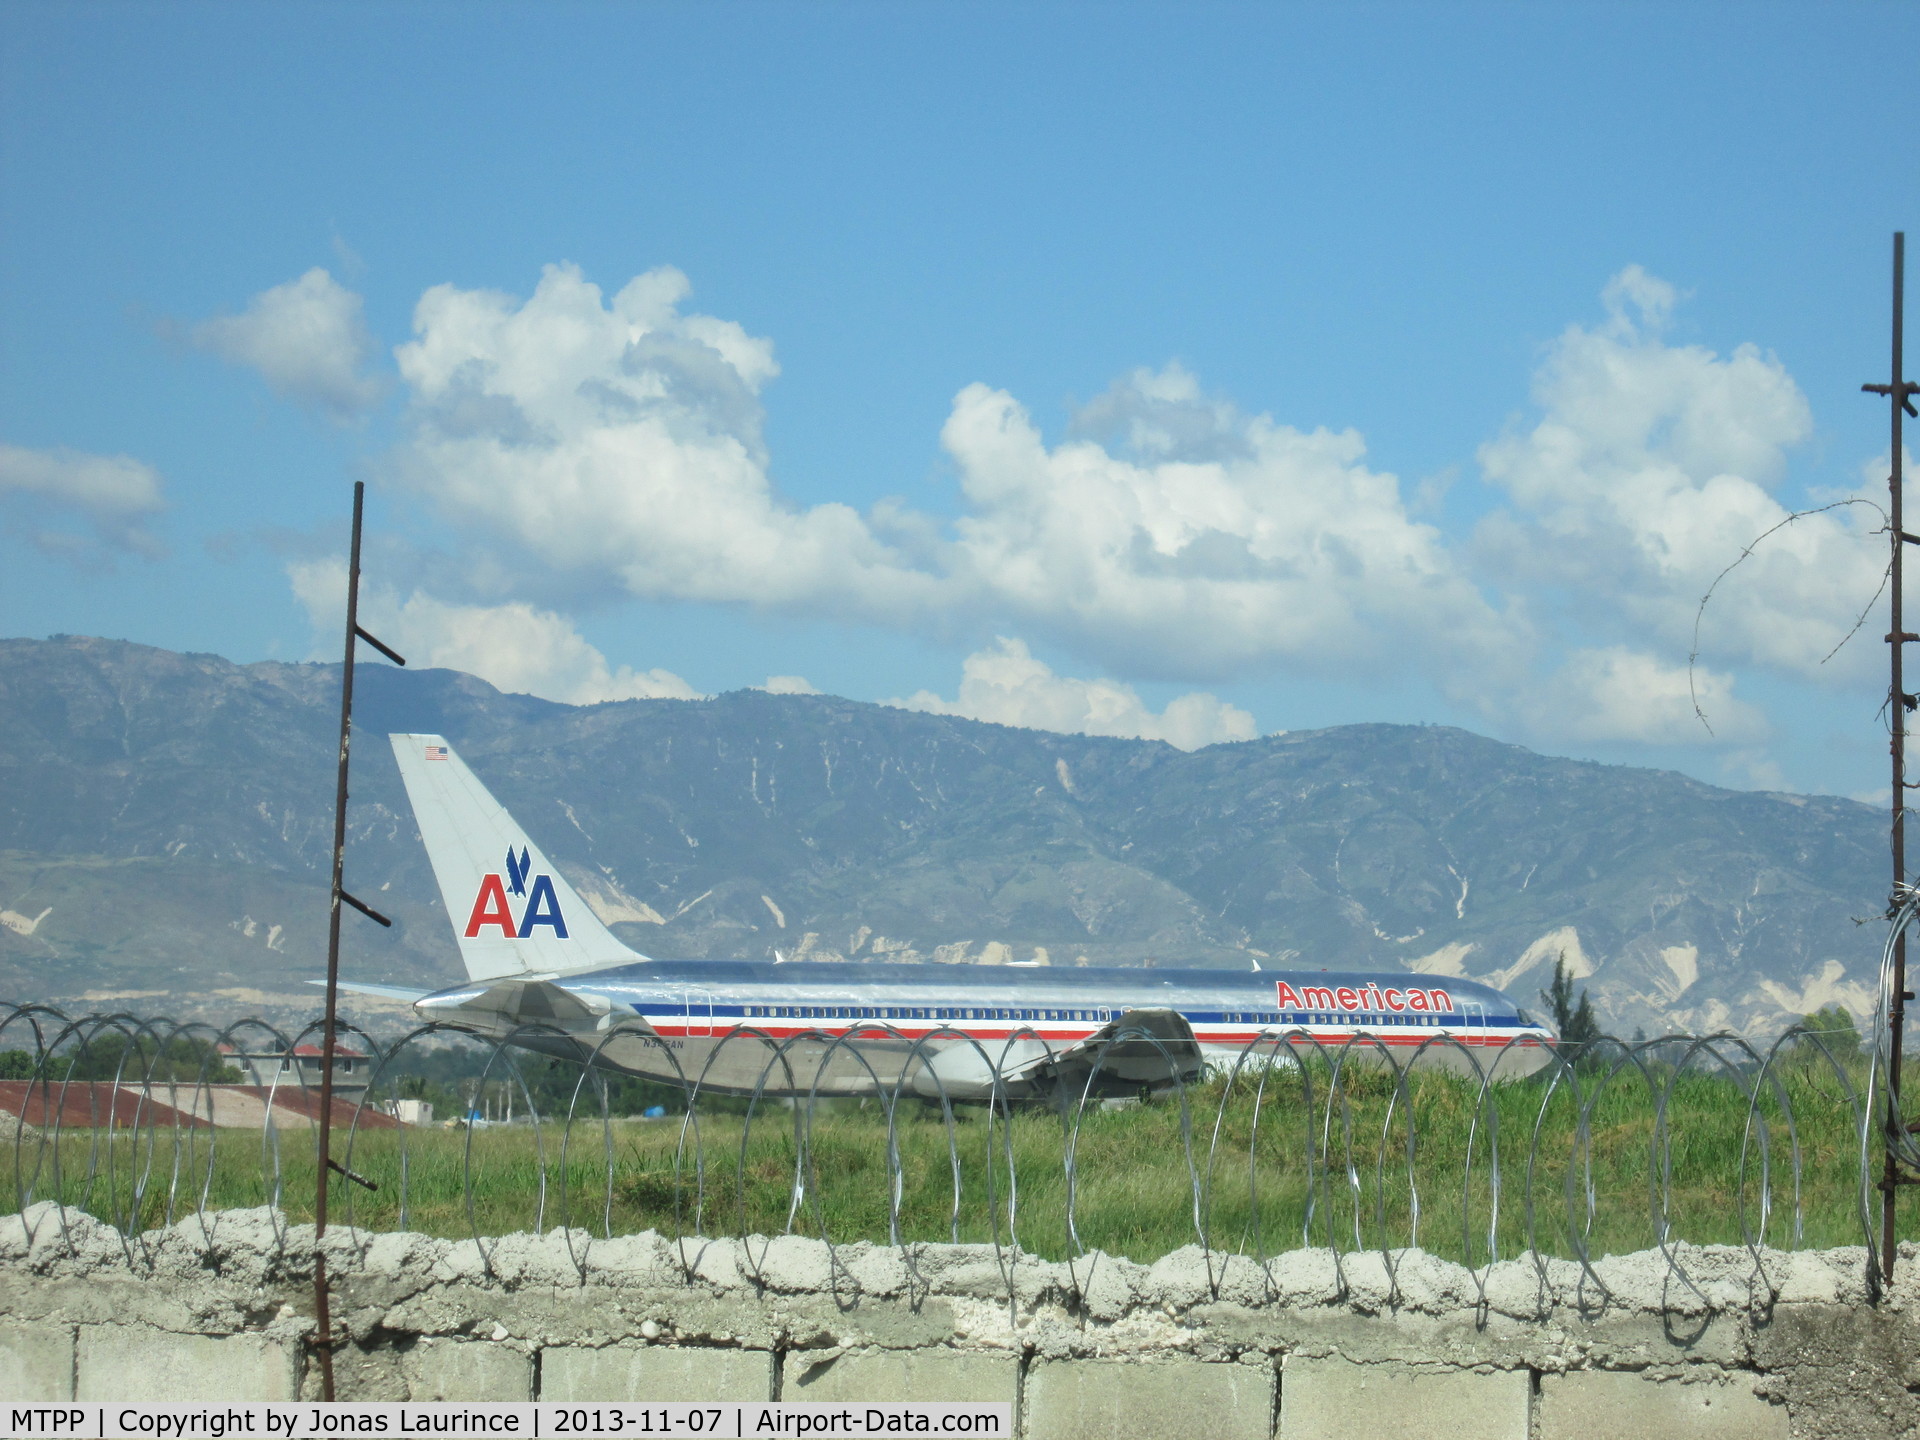 Port-au-Prince International Airport (Toussaint Louverture Int'l), Port-au-Prince Haiti (MTPP) - AA take off at the Toussaint Louverture International Airport of Port-au-Prince